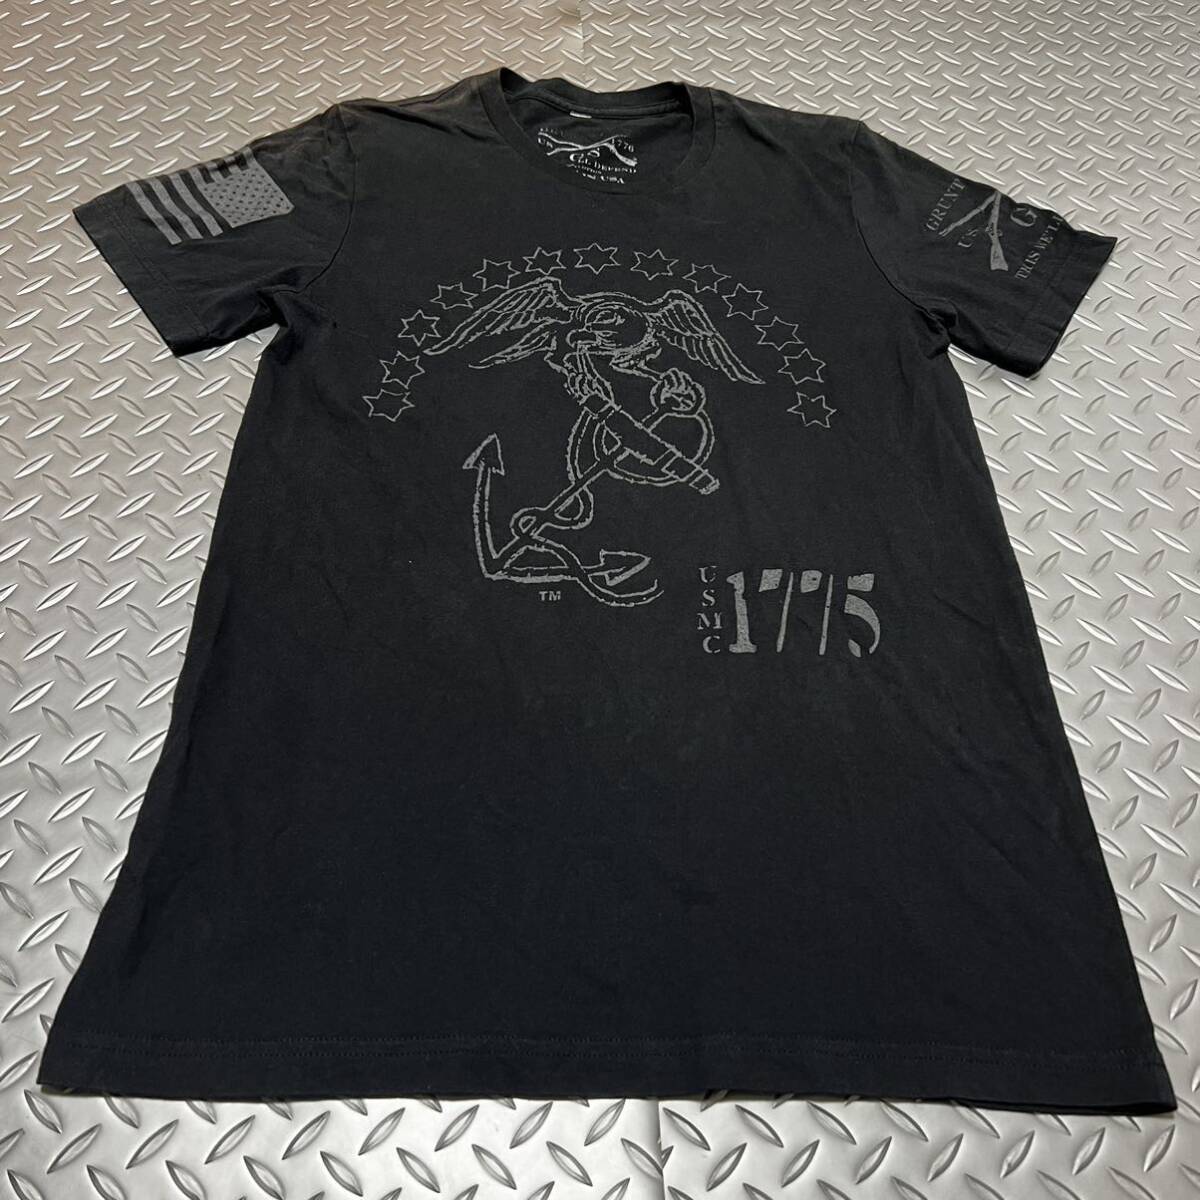 米軍放出品 Tシャツ  USMC 半袖Tシャツ 1775 MARINE おしゃれBLACK (INV J#10)の画像1